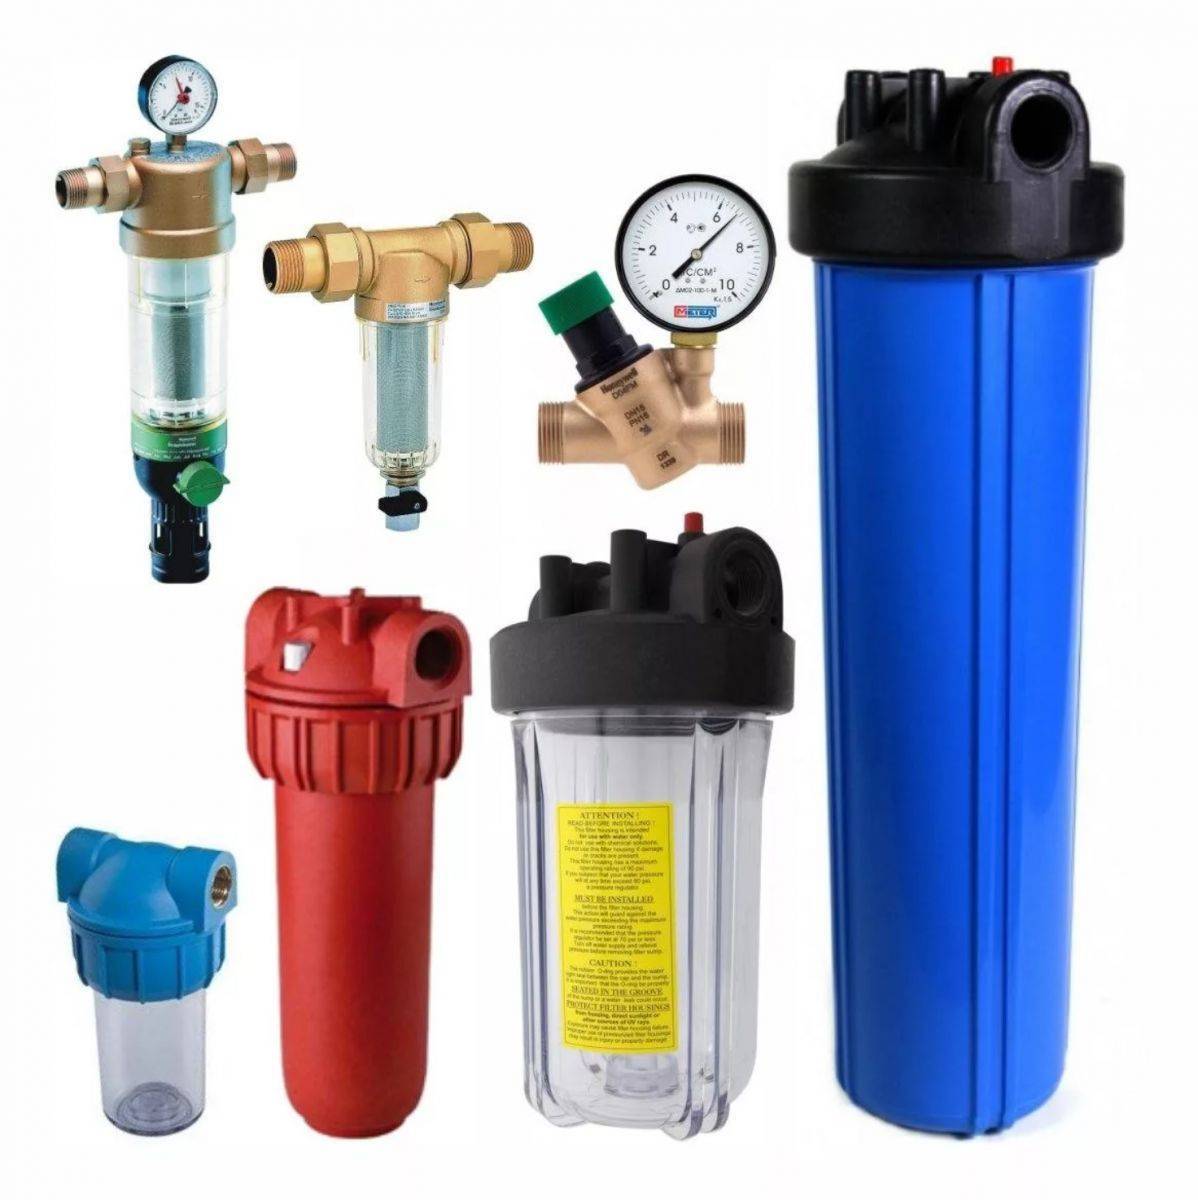 4 полезных фильтра грубой очистки воды. установка, особенности.